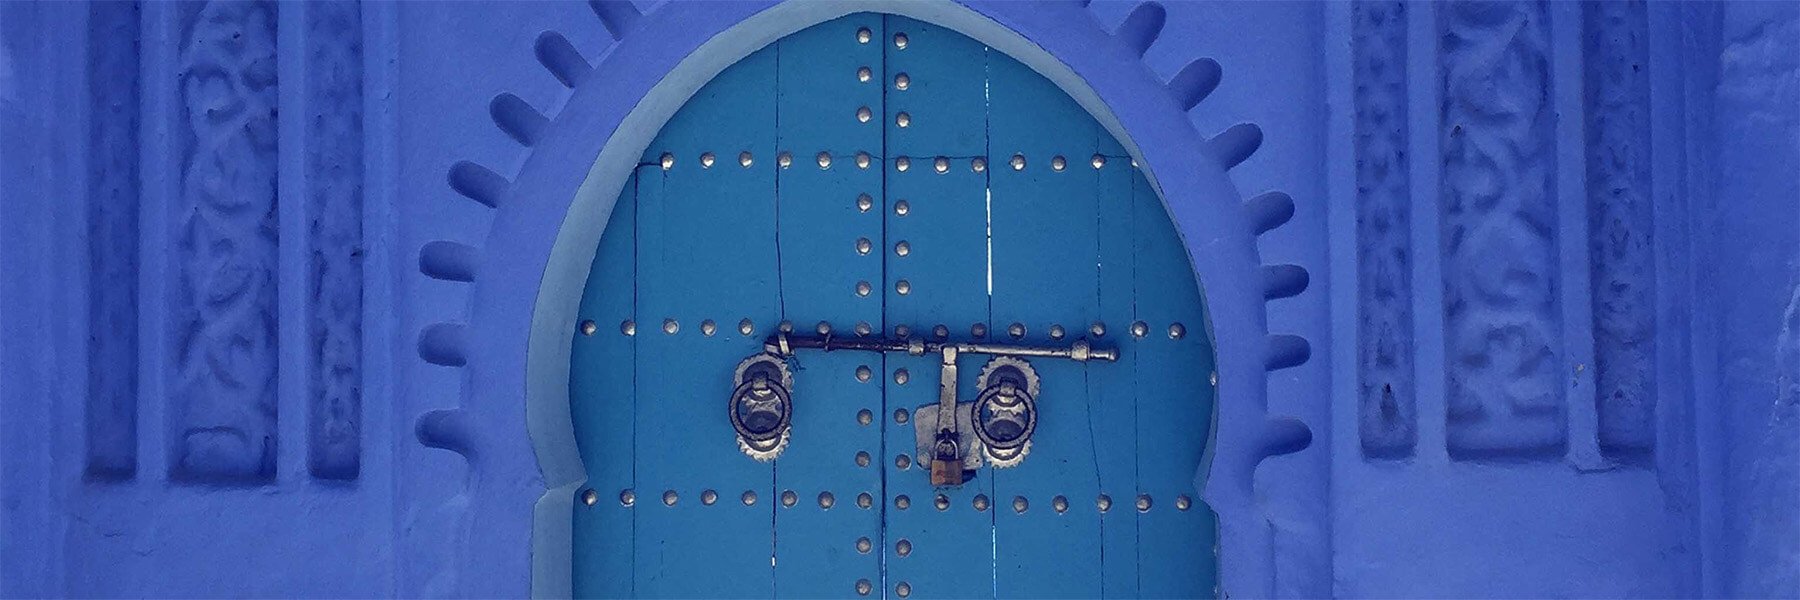 Blue door way with a locked door